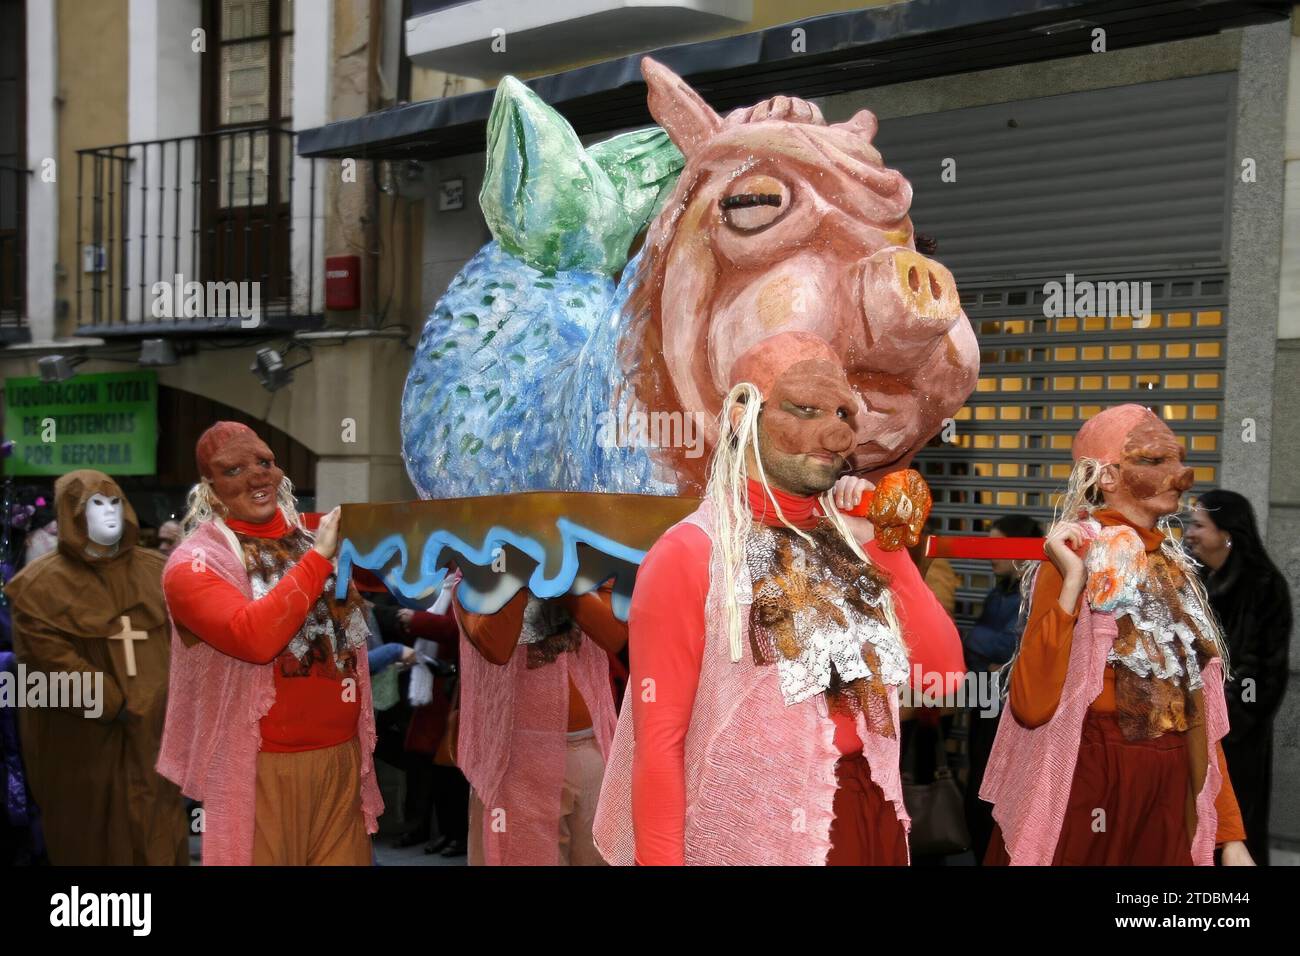 Tolède, 02/03/2008. La sardine de cette année avait une tête de porc, une touche très originale. Crédit : Album / Archivo ABC / Ana Pérez Herrera Banque D'Images